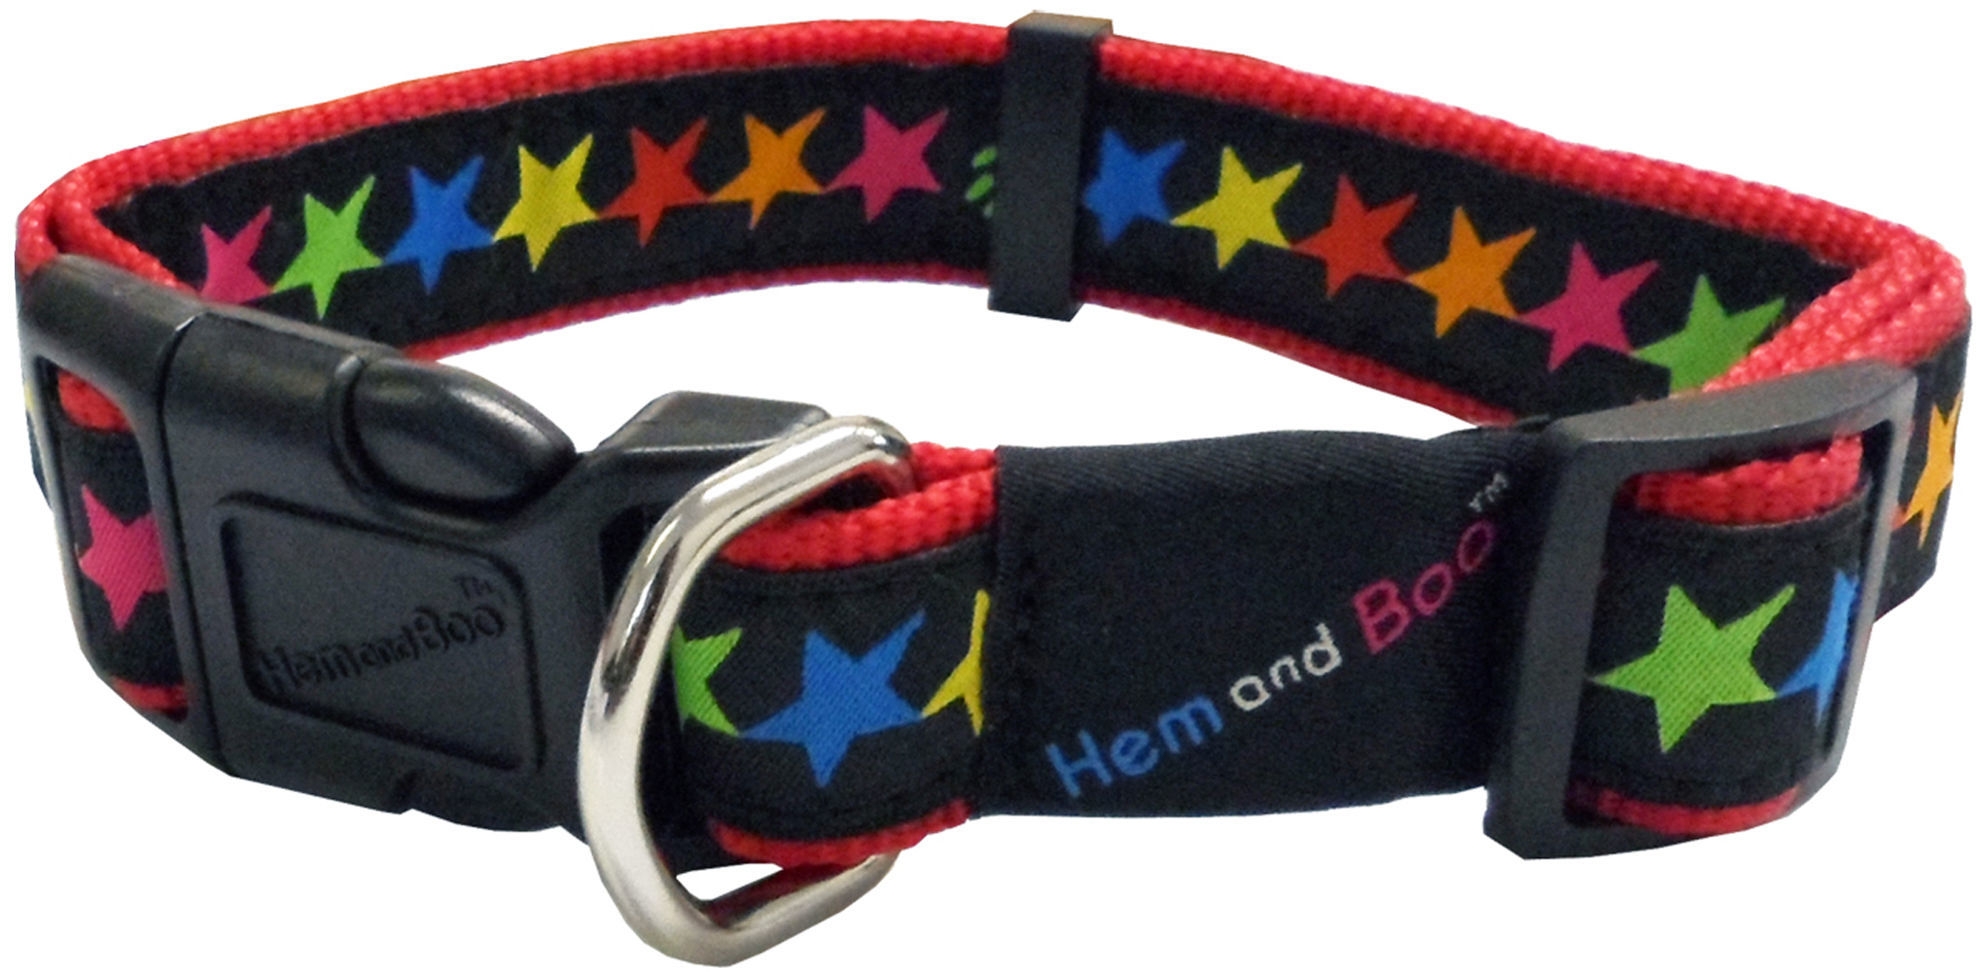 Hem and Boo. Stars Dog Collar